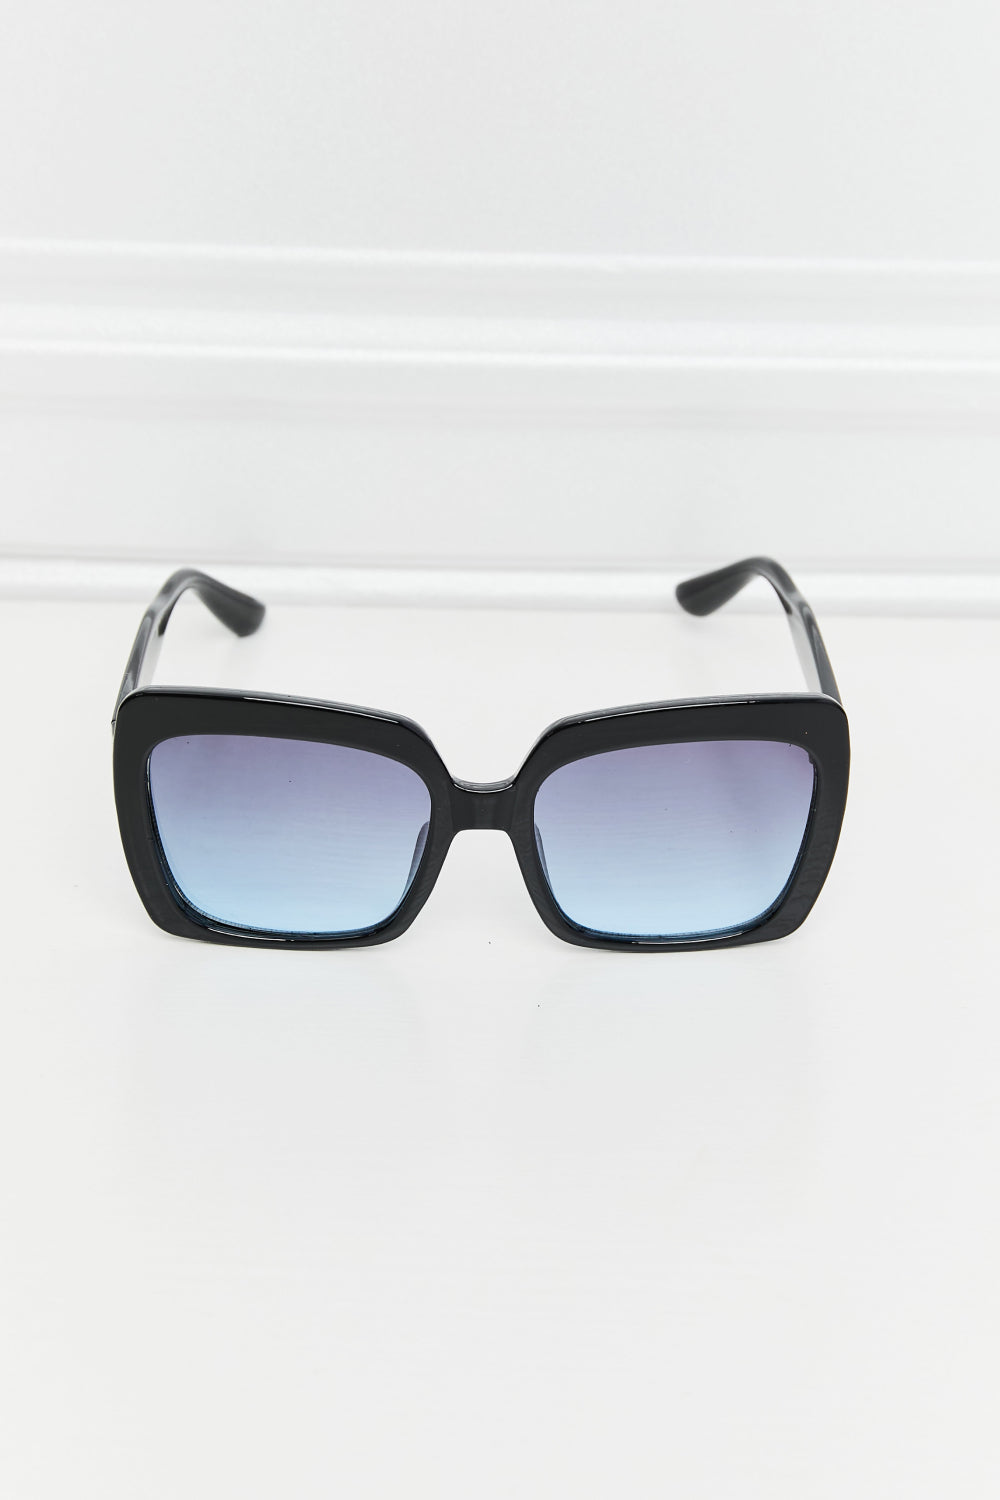 Uylee's Boutique Square Full Rim Sunglasses